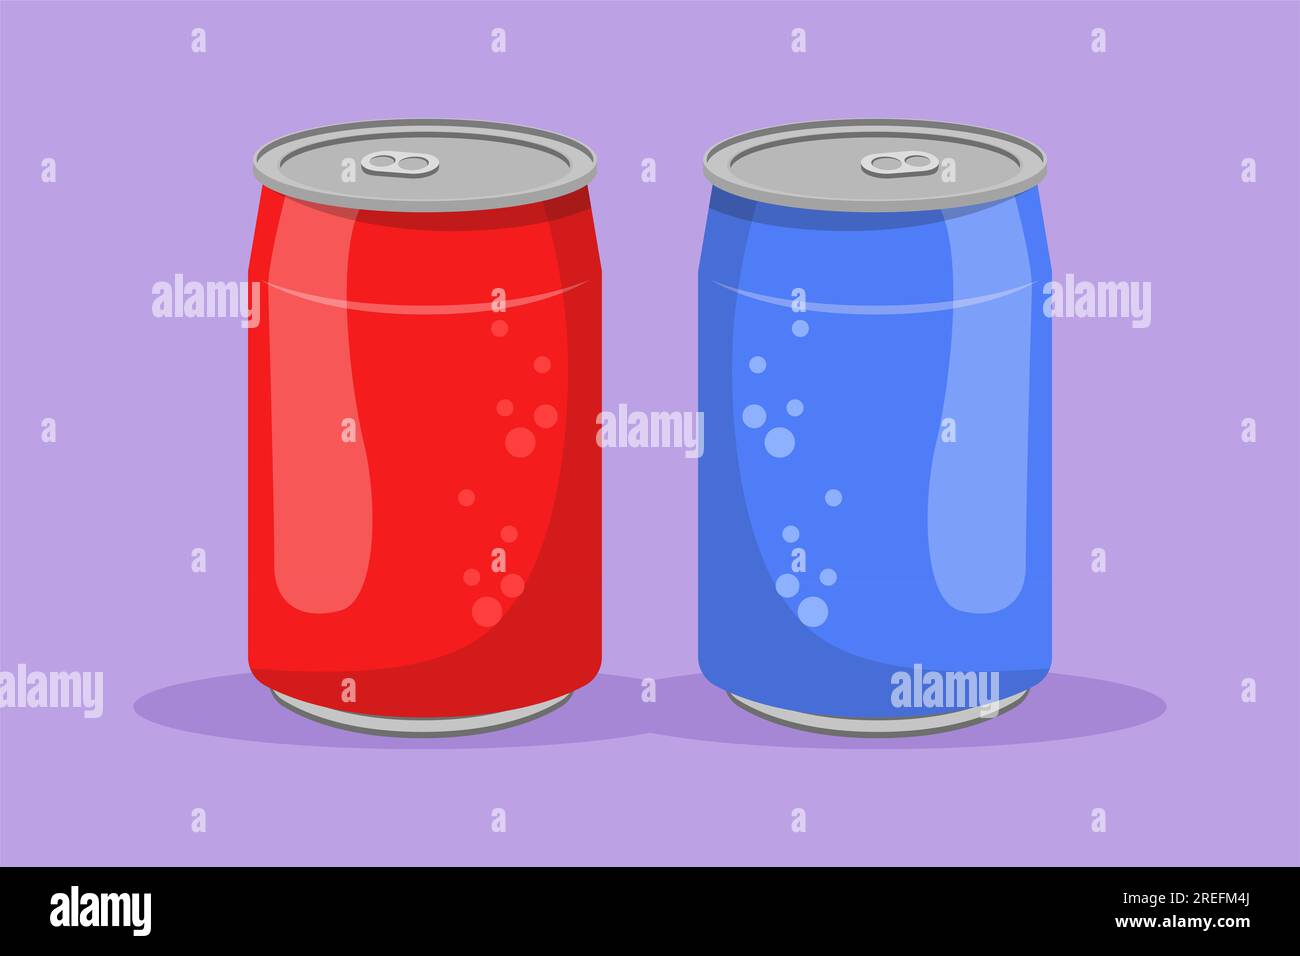 Flacher Cartoon mit stilisiertem Erfrischungsgetränk auf Aluminiumetiketten. Emblem Getränkegeschäft-Konzept für Café-Shop oder Gastronomiedienst. Aktualisieren d Stockfoto